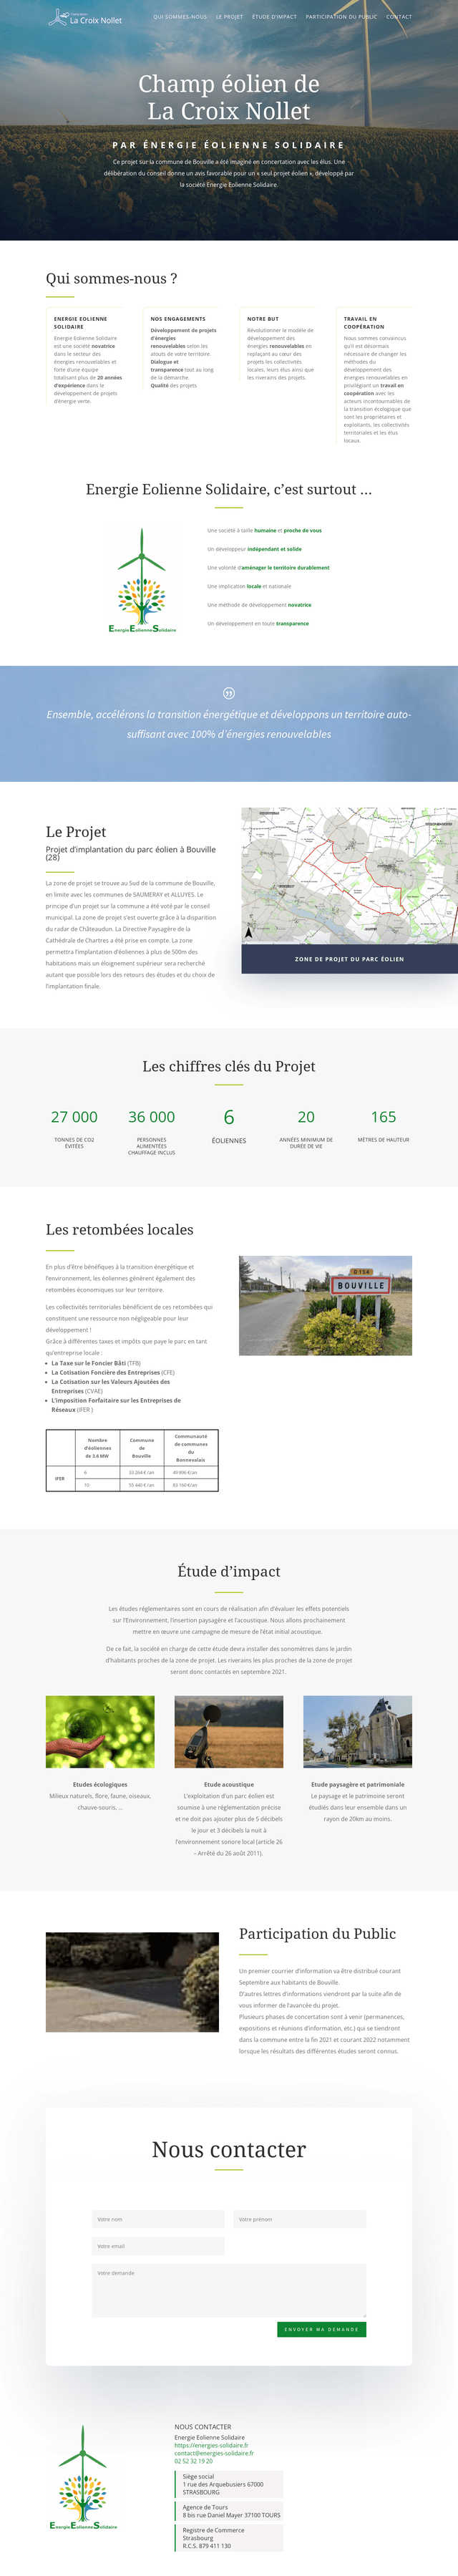 Aperçu du site internet du projet éolien de La Croix Nollet